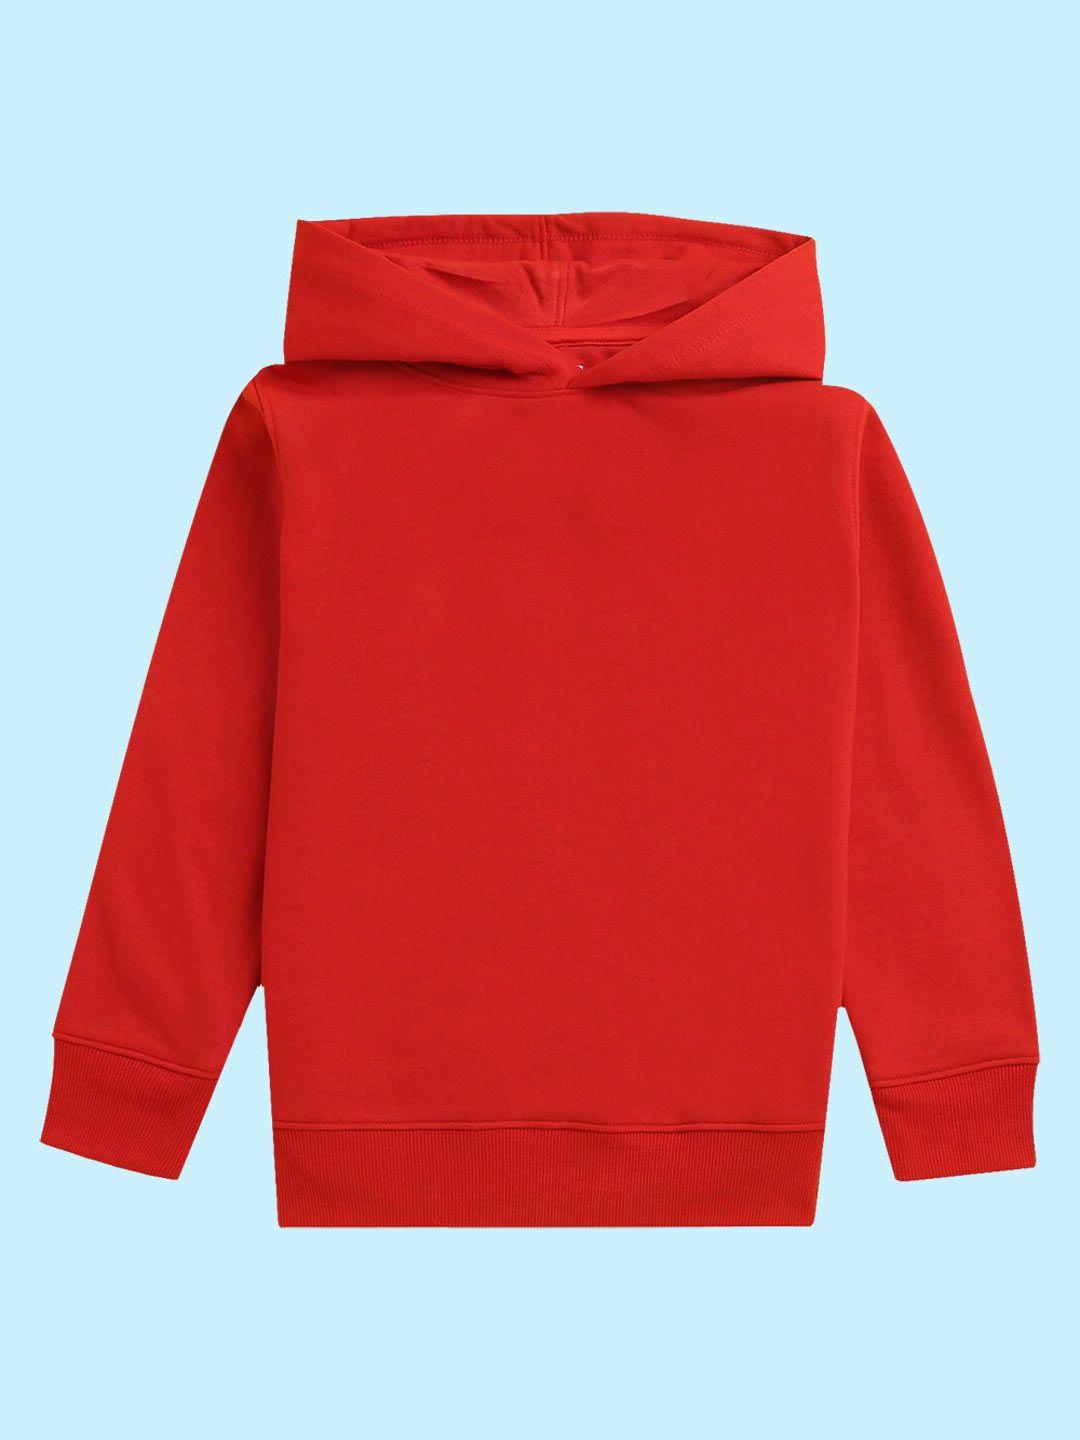 baesd unisex kids graphic printed hooded fleece sweatshirt